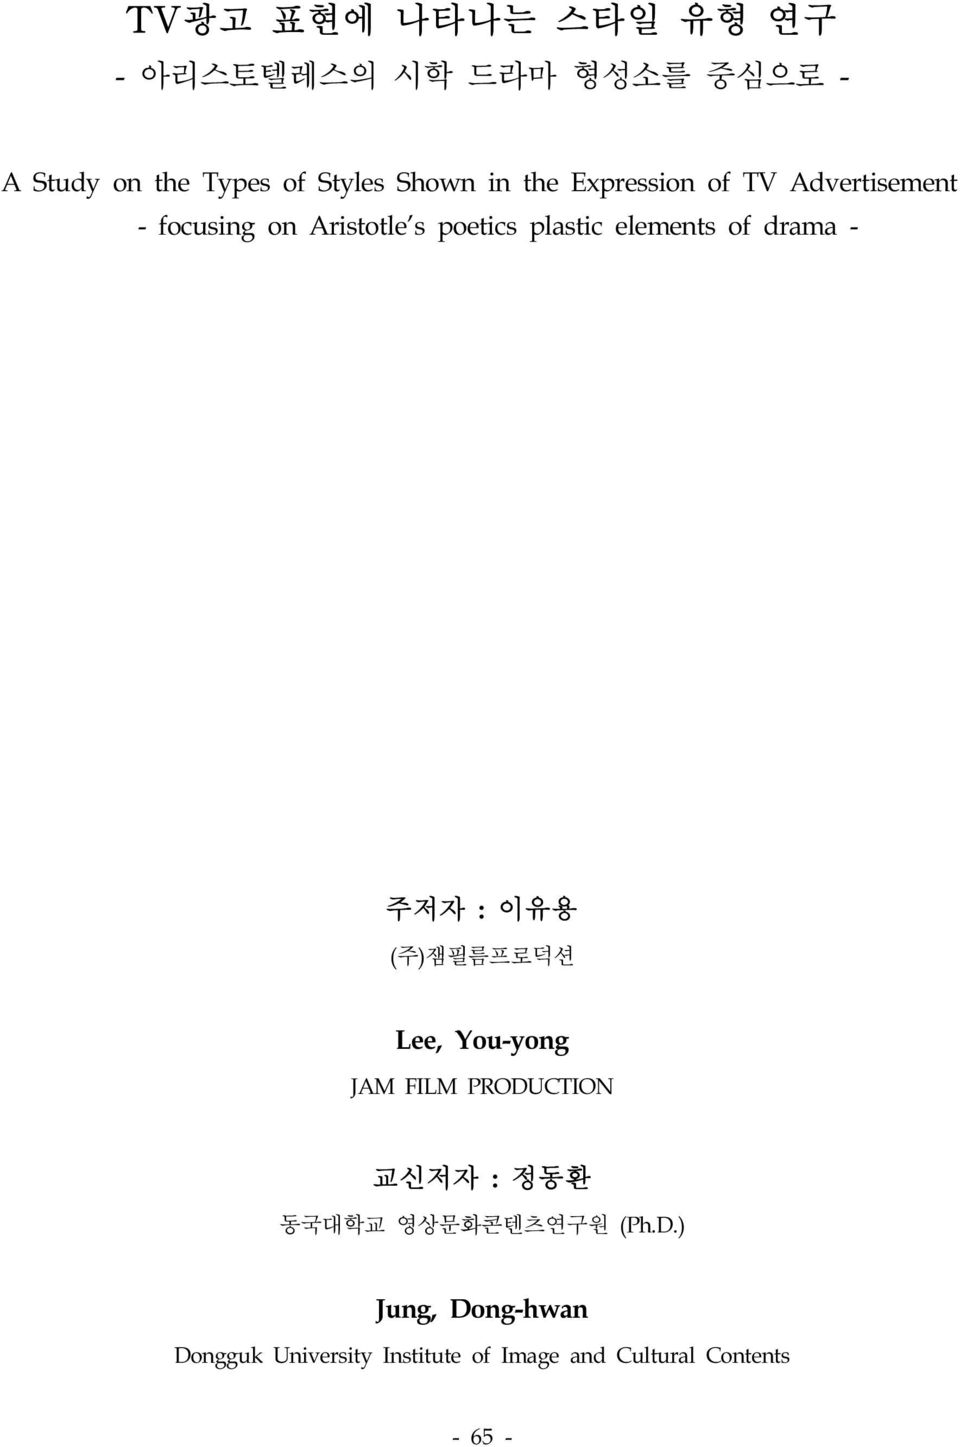 drama - 주저자 : 이유용 (주)잼필름프로덕션 Lee, You-yong JAM FILM PRODUCTION 교신저자 : 정동환 동국대학교 영상문화콘텐츠연구원